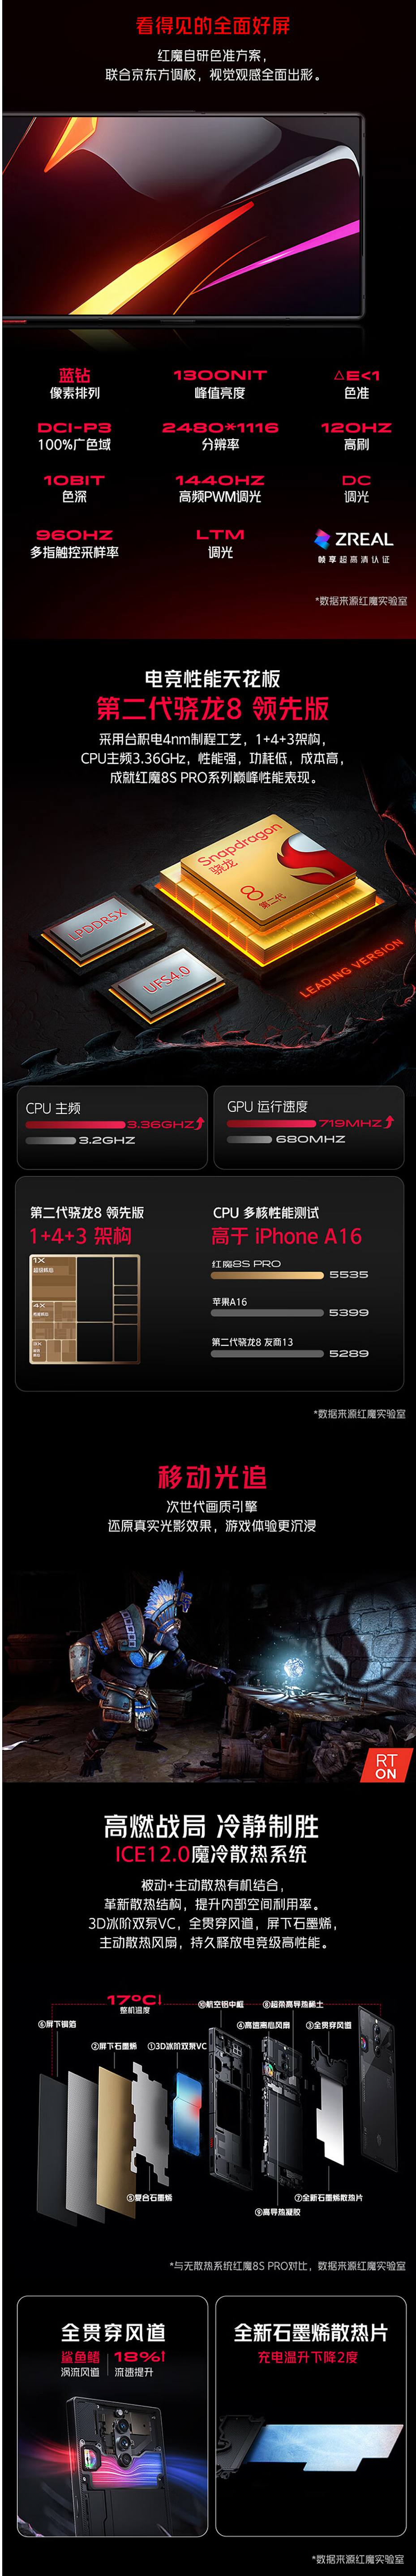 红魔 8S Pro + 手机 24GB+1TB 版开售，售价 7499 元 - 2